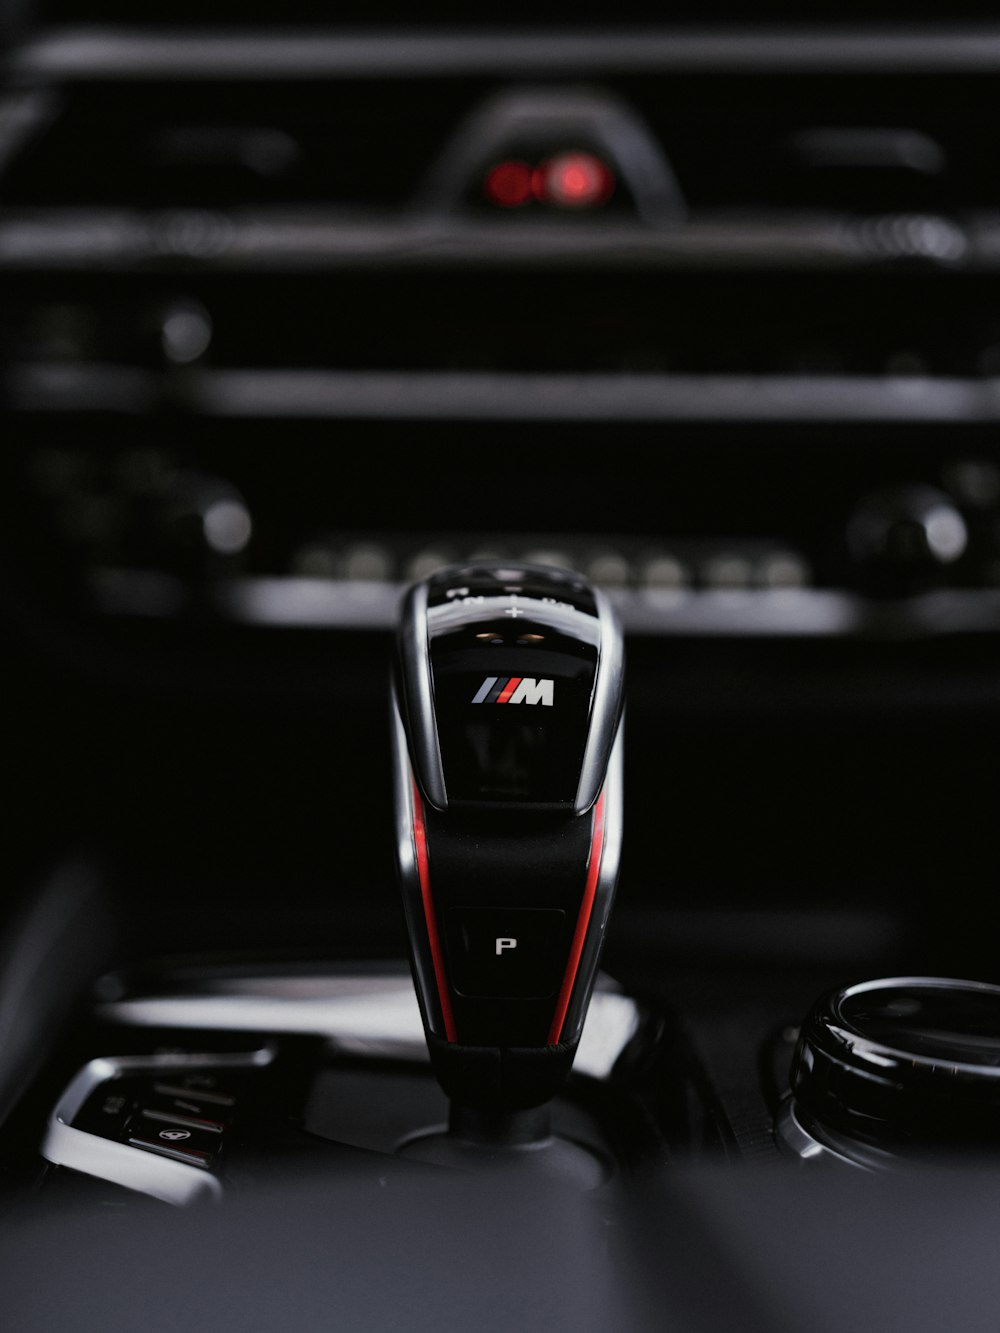 a close up of a remote control in a car